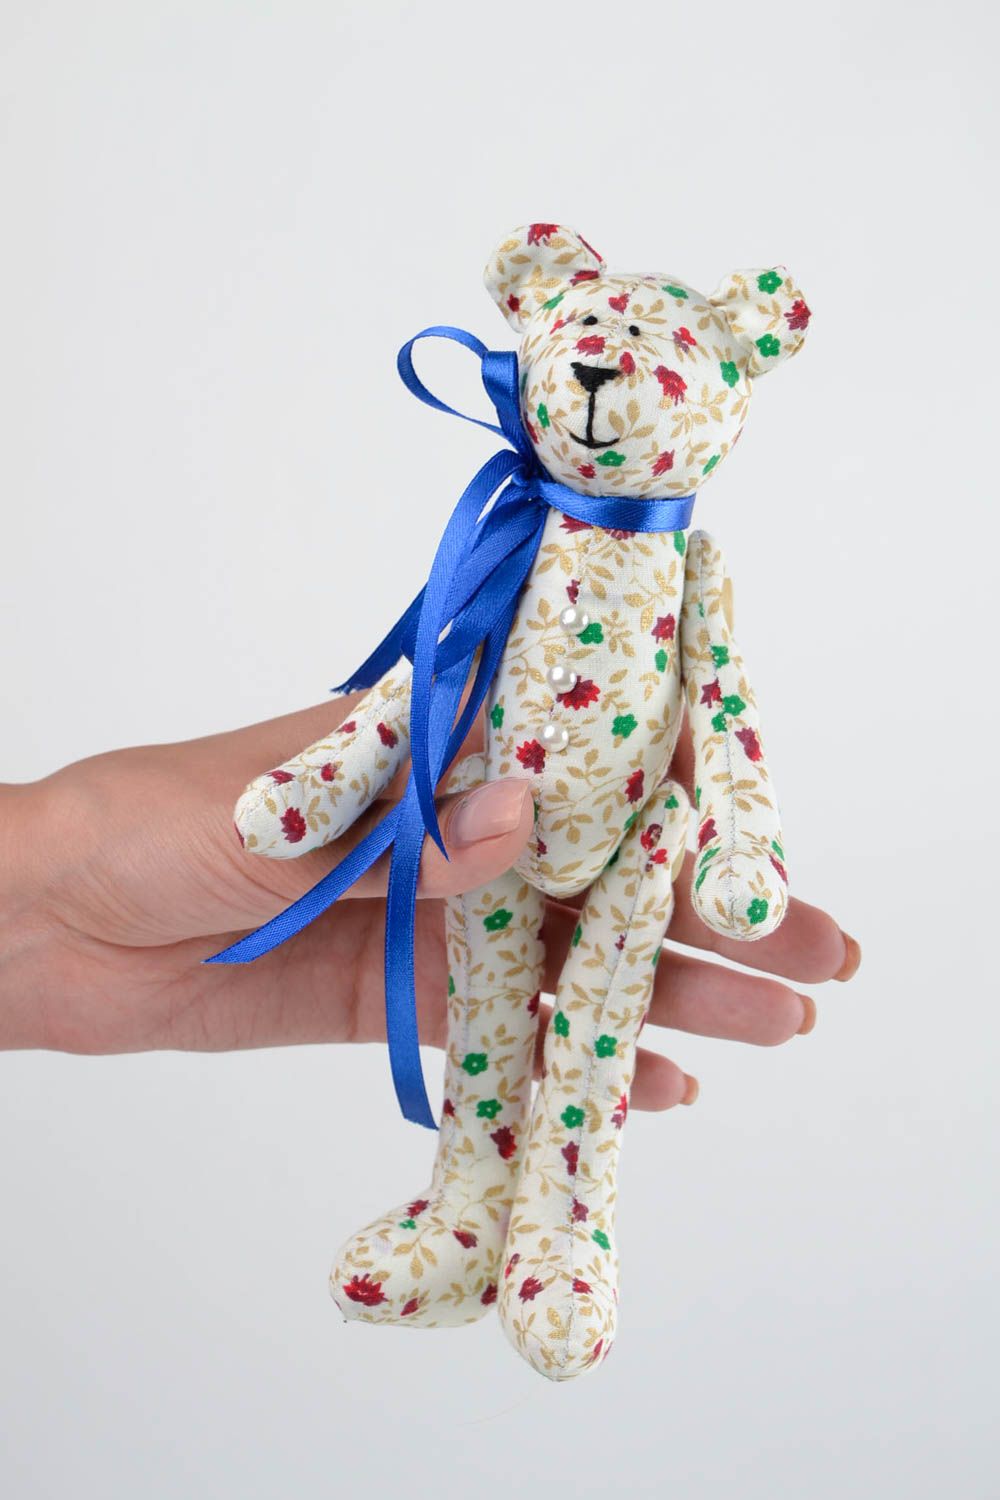 Jouet Ours en tissu de coton fait main avec noeud bleu Cadeau pour enfant photo 2